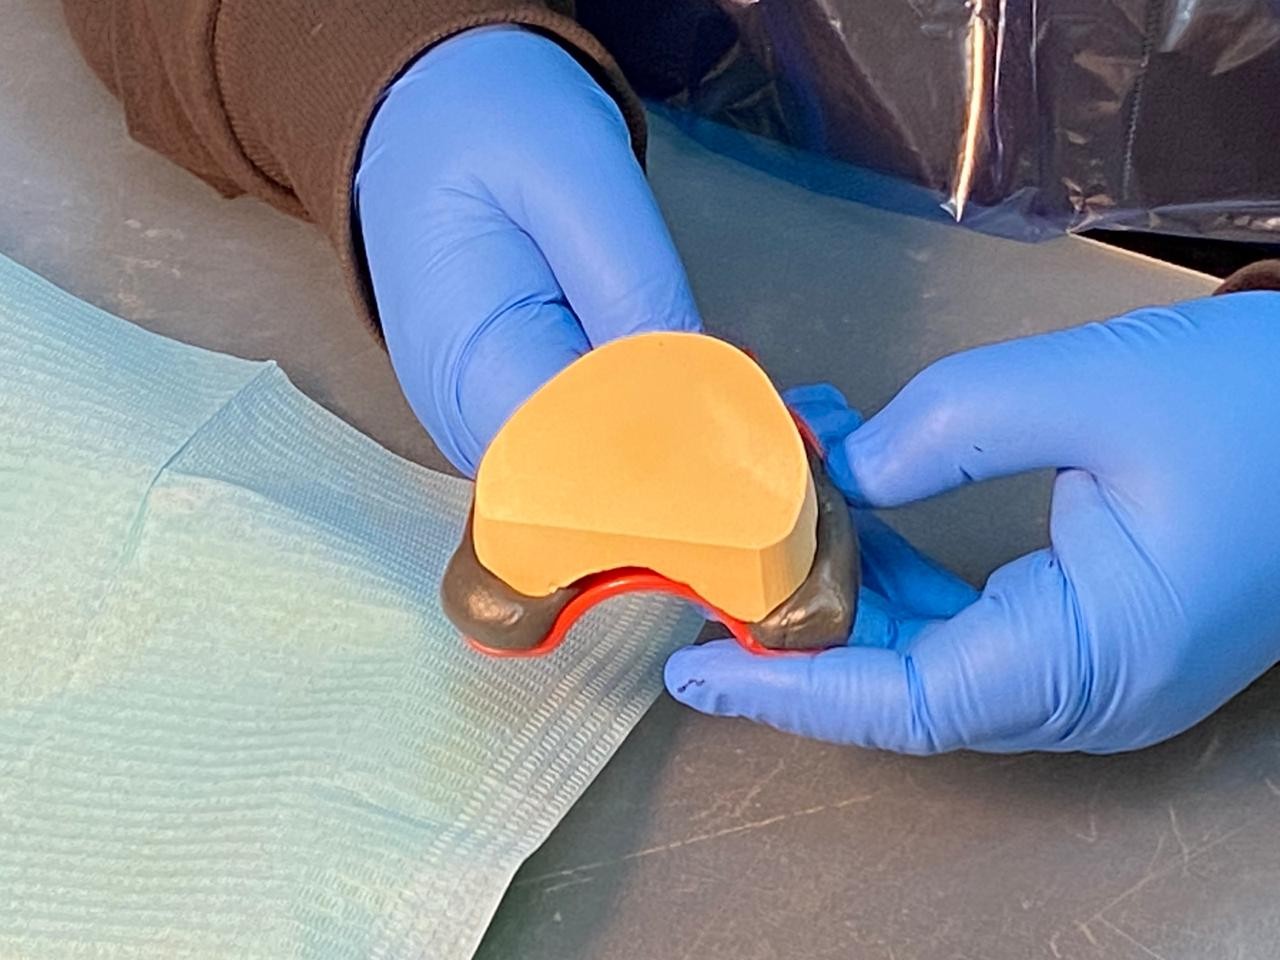 Препарирование зубов под цельнокерамические реставрации во фронтальном отделе. Пост-релиз 22 ноября